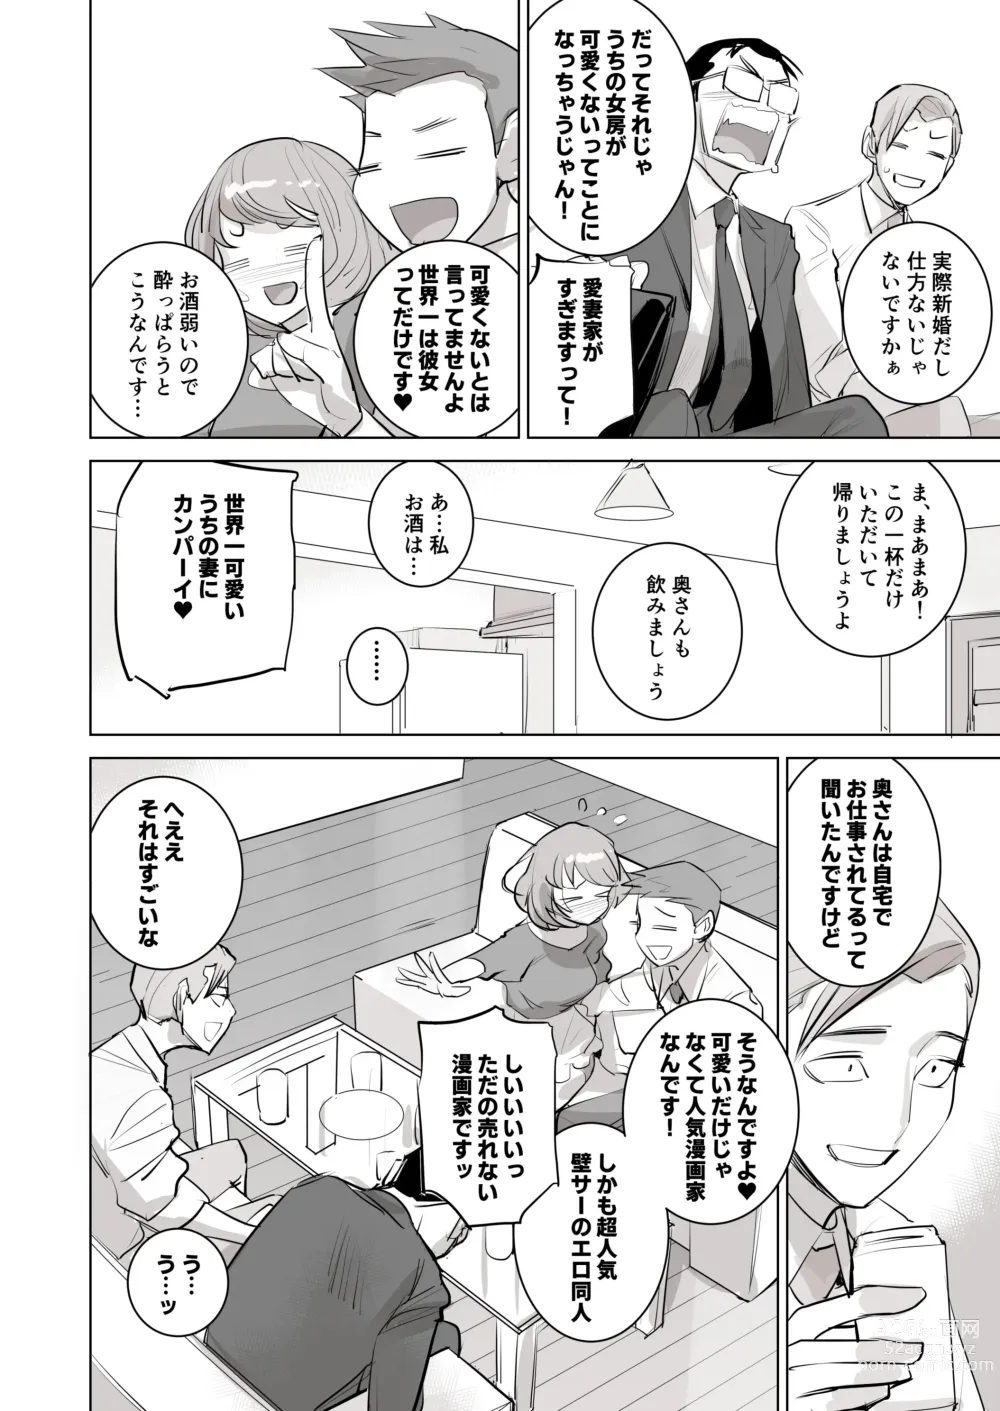 Page 30 of doujinshi 人気同人作家の妻とラブラブ新婚性活でも妻が好きすぎてNTRしてしまうボクなんです